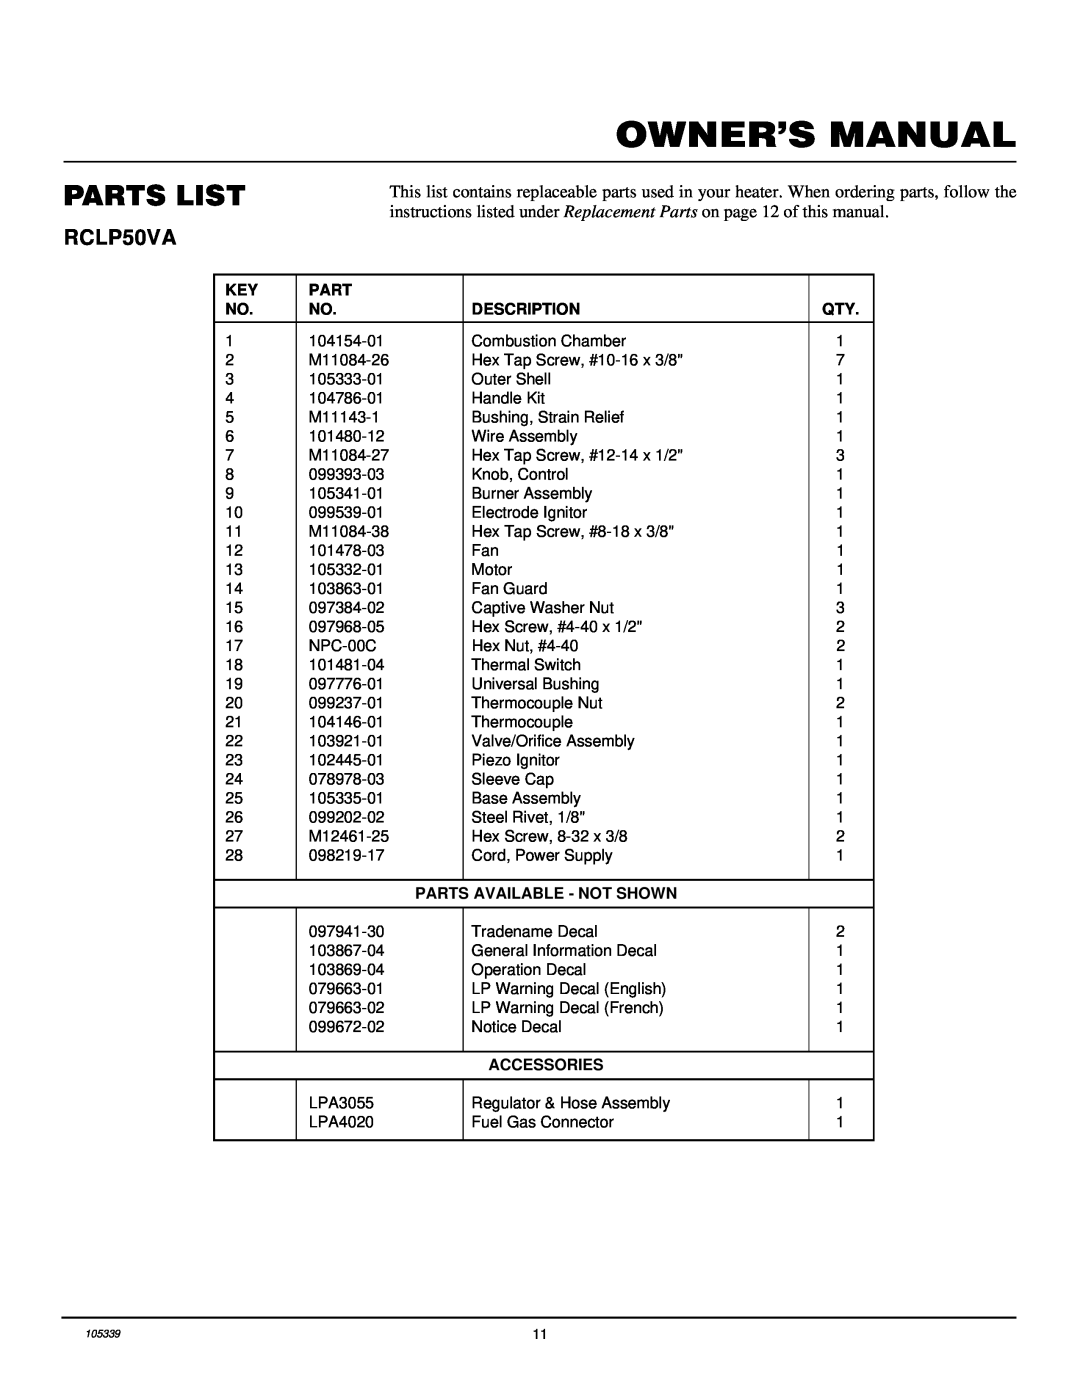 Desa RCLP50VA owner manual Parts List, Description, Parts Available - Not Shown, Accessories 